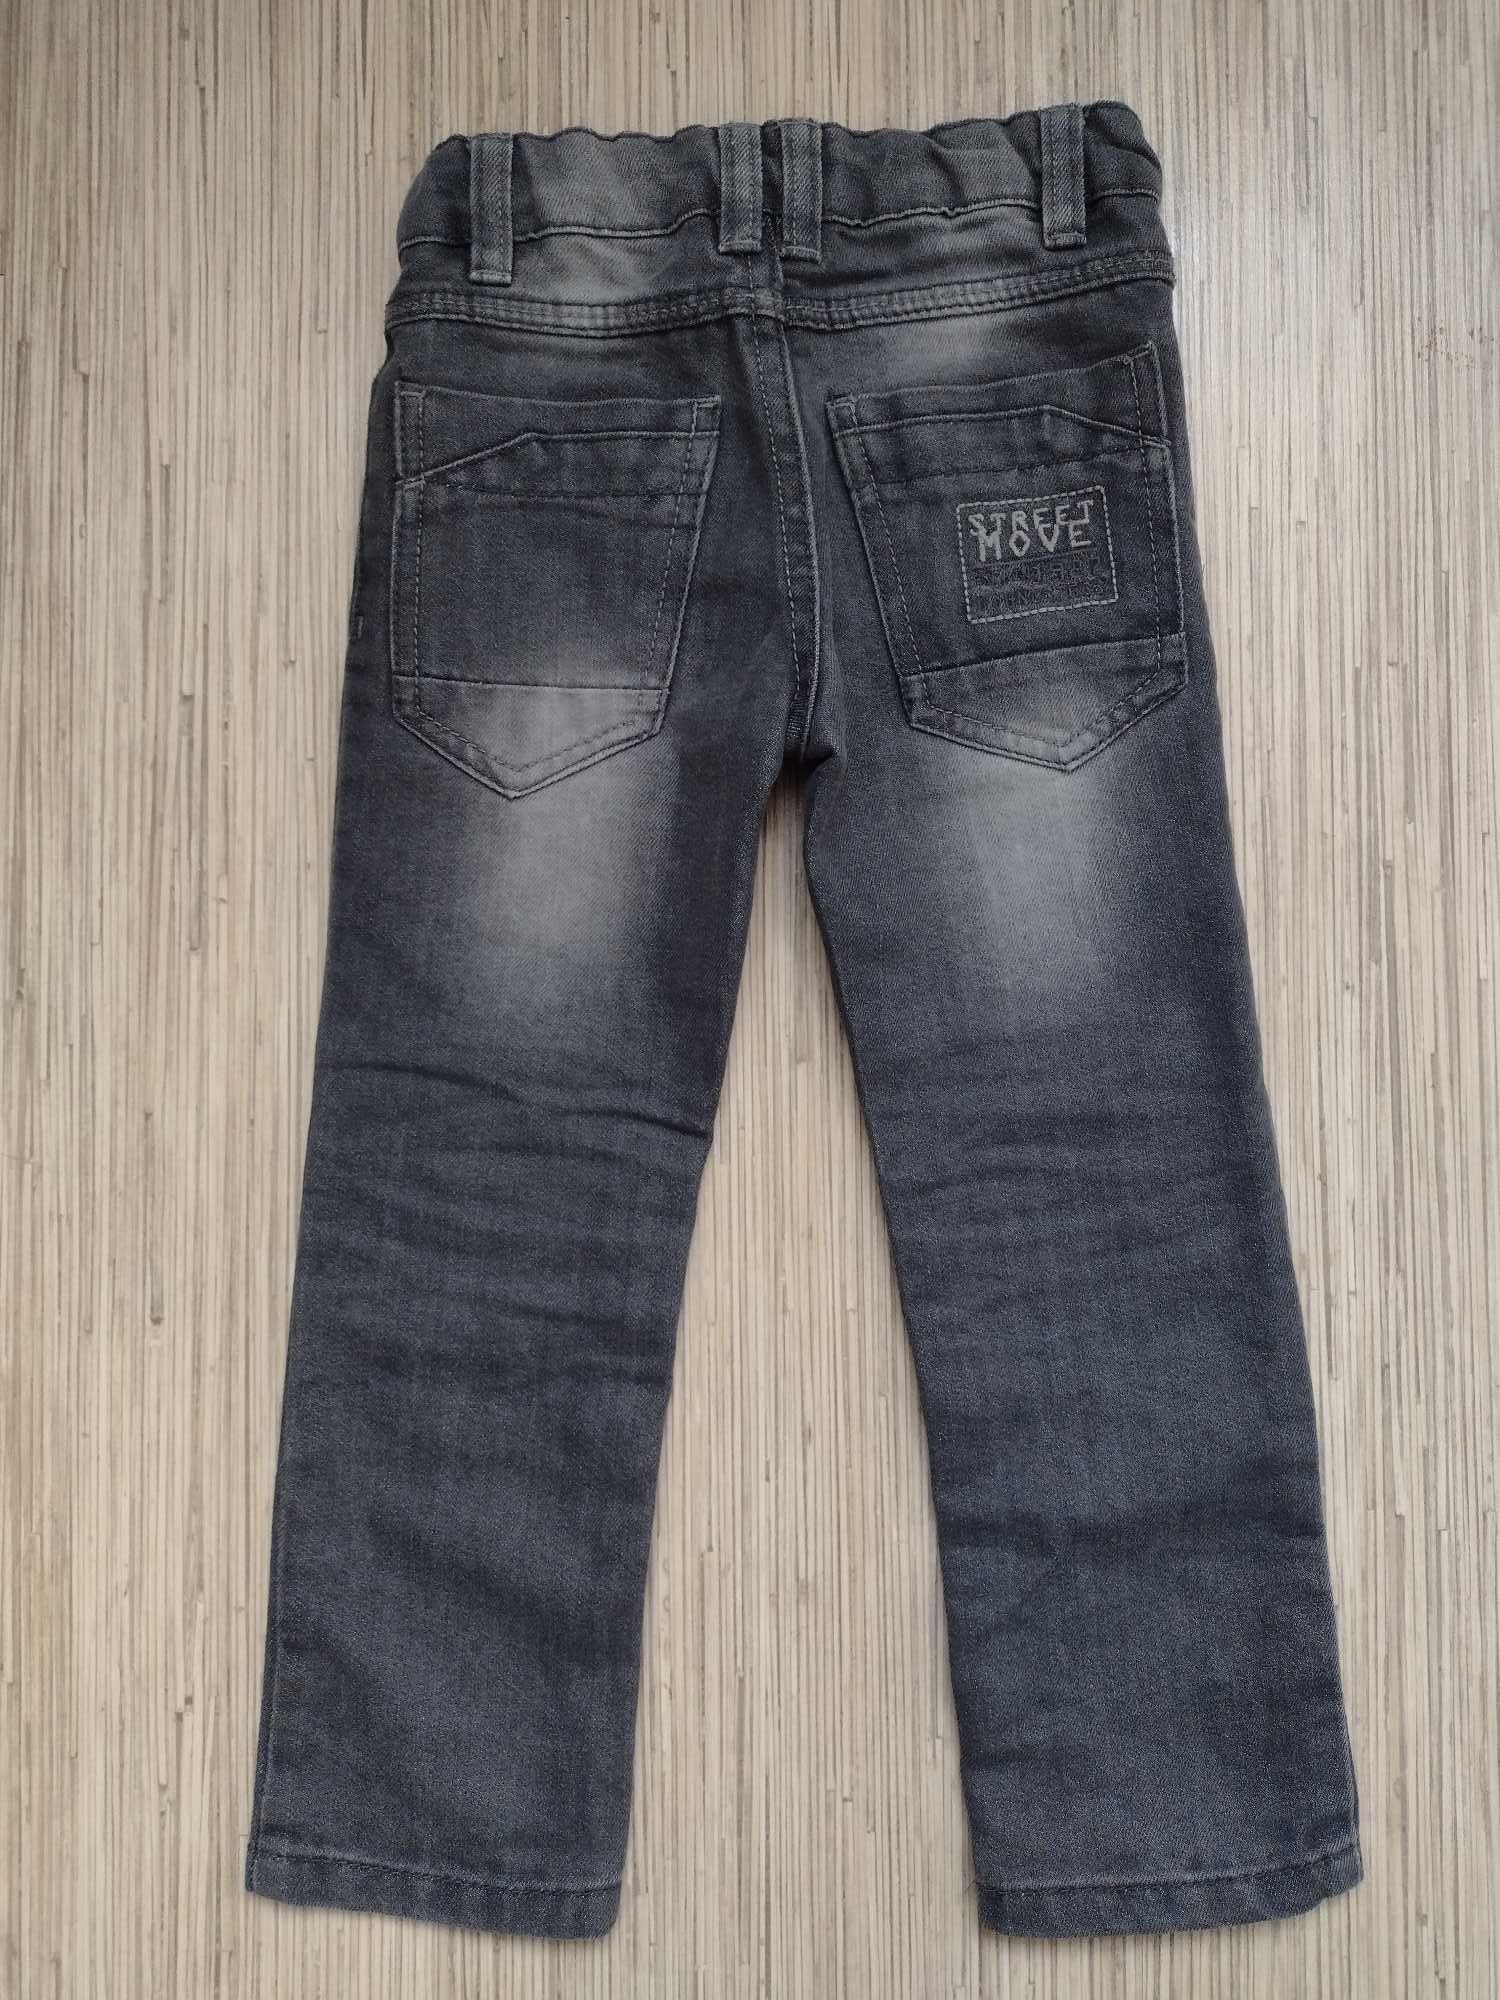 LUPILU, rozmiar 104, spodnie jeansowe dla chłopca